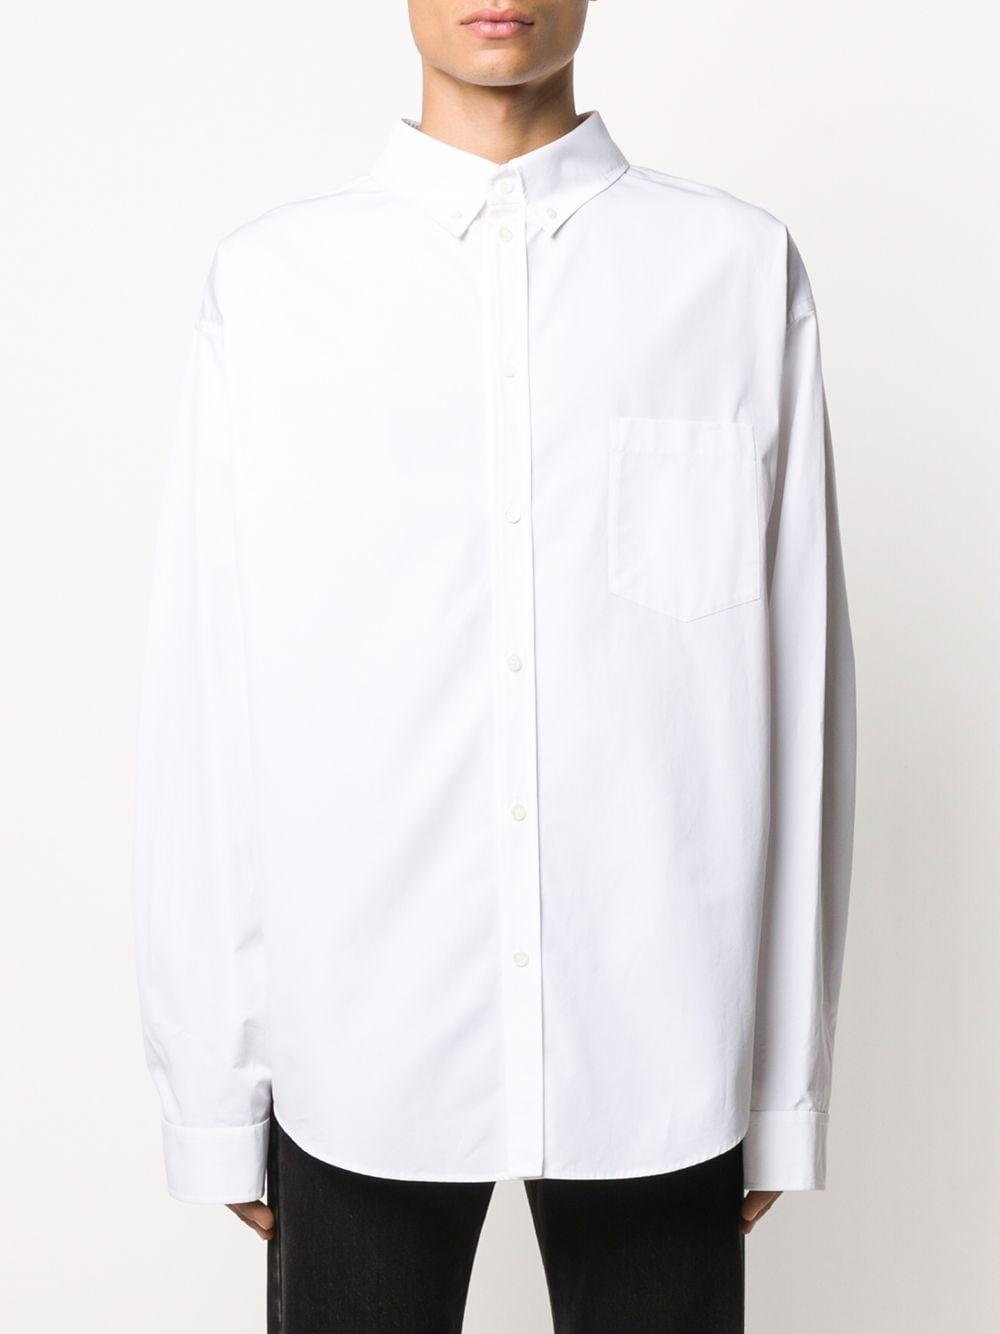 Balenciaga Double-faced Cotton Shirt in White for Men - Lyst